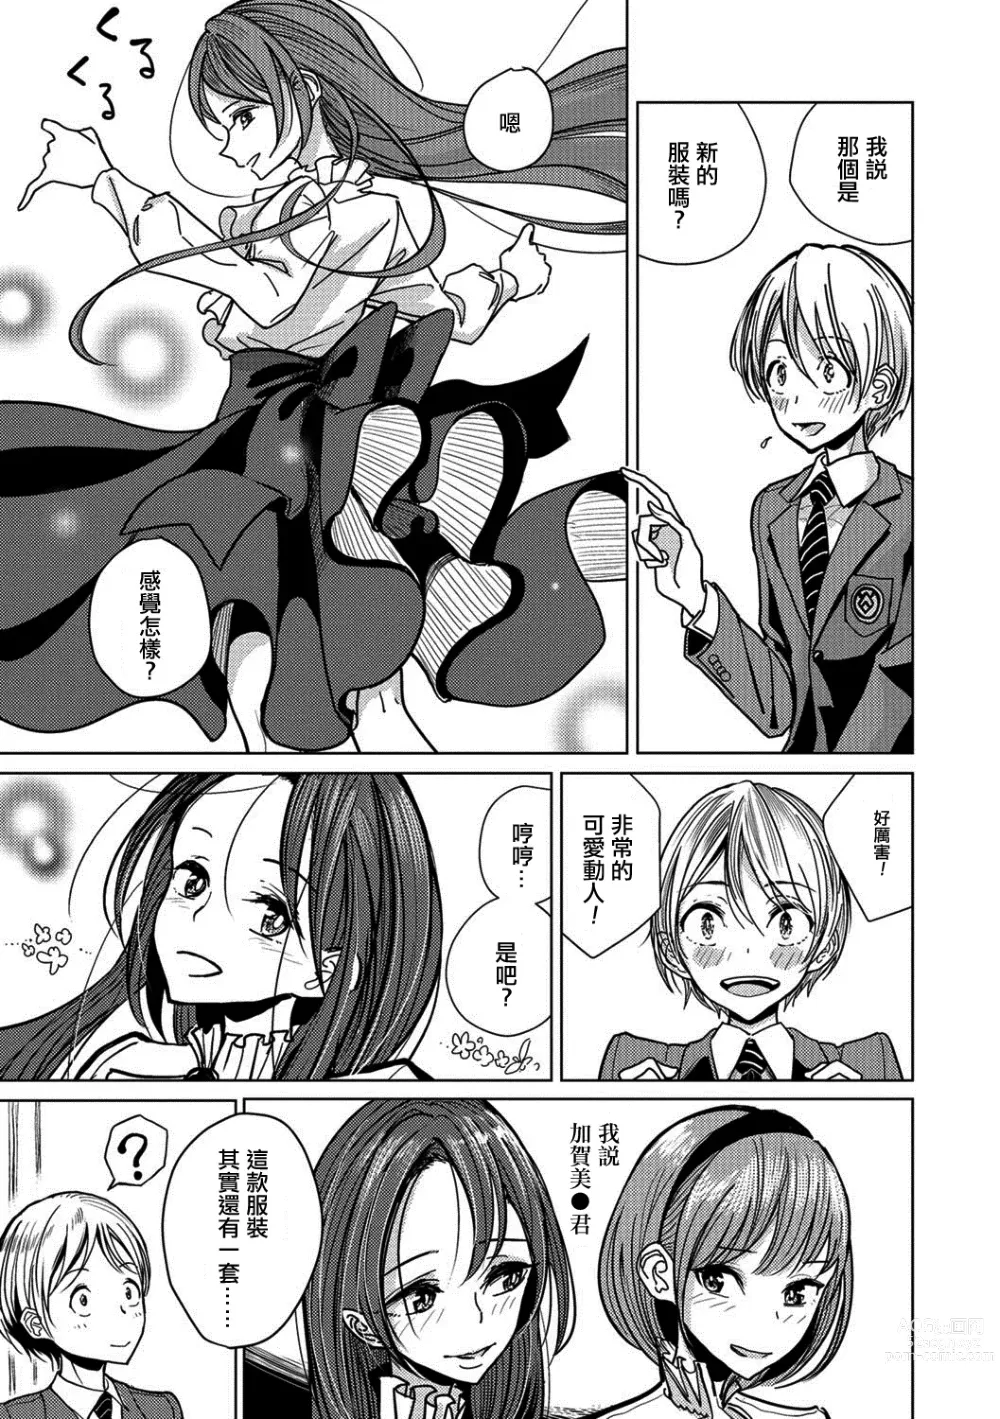 Page 8 of manga Bokura wa...